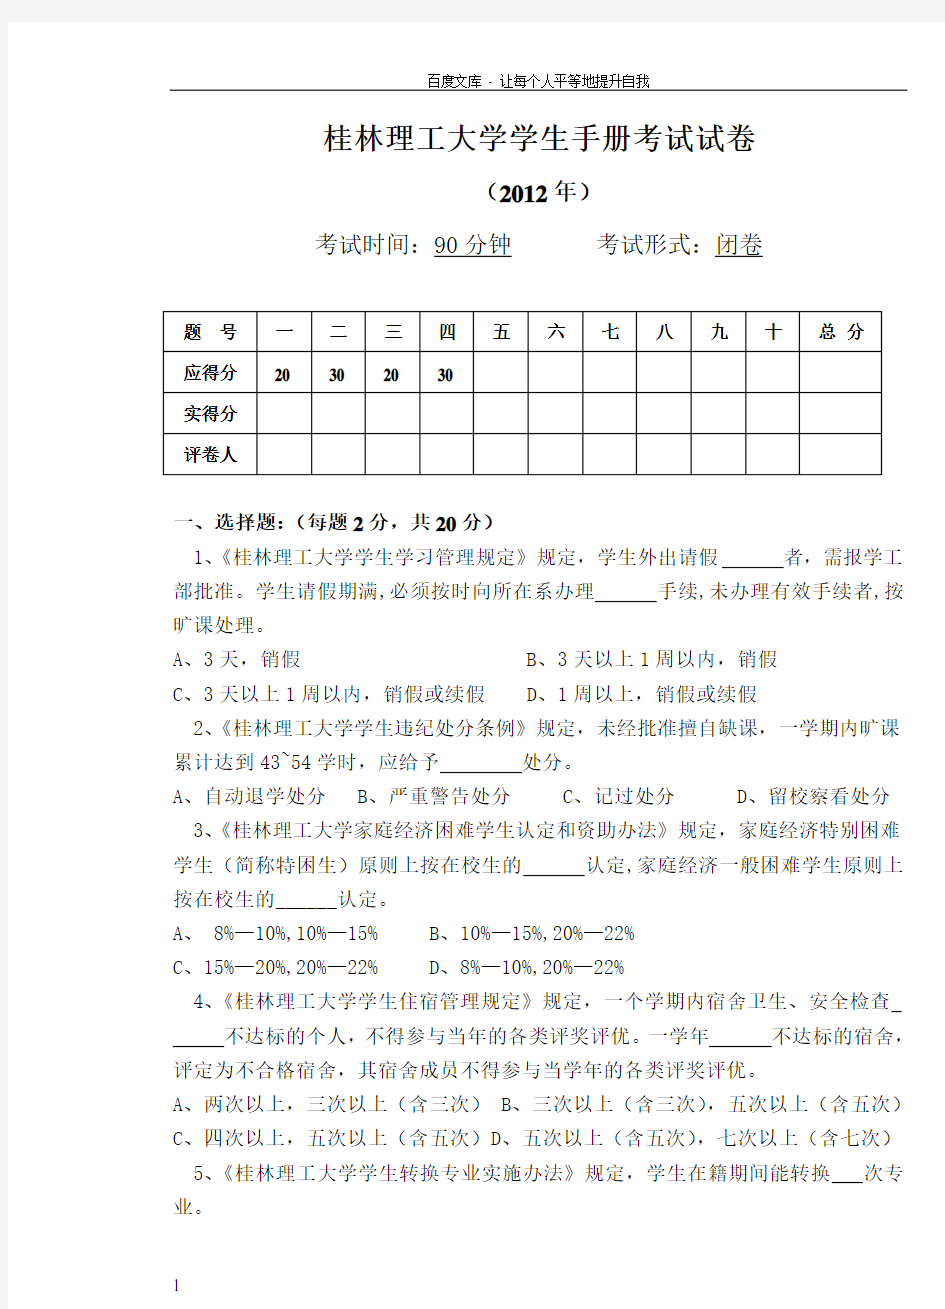 桂林理工大学学生手册考试试卷